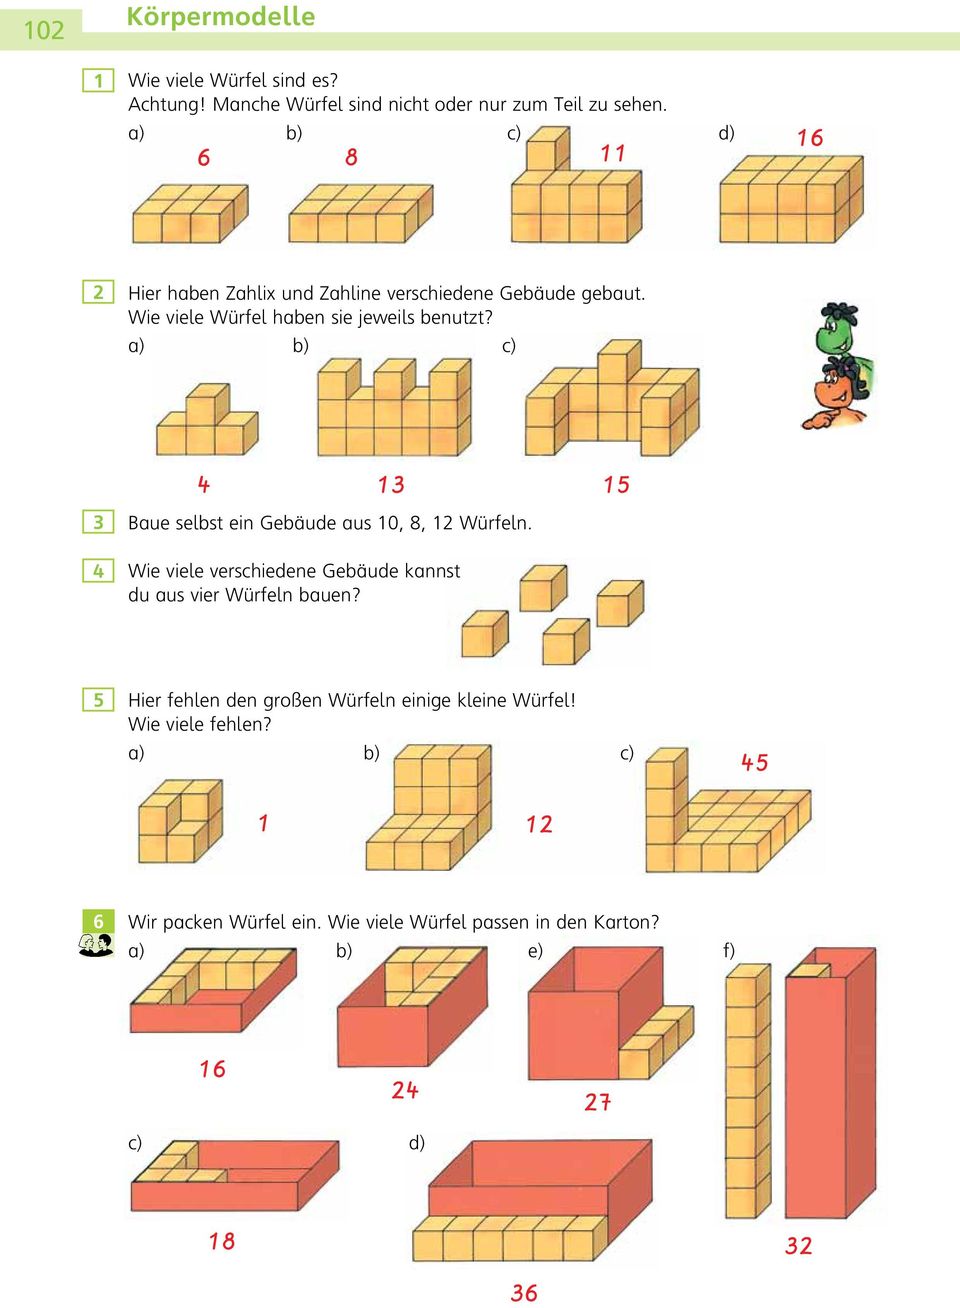 a) b) c) Baue selbst ein Gebäude aus 0, 8, Würfeln. Wie viele verschiedene Gebäude kannst du aus vier Würfeln bauen?